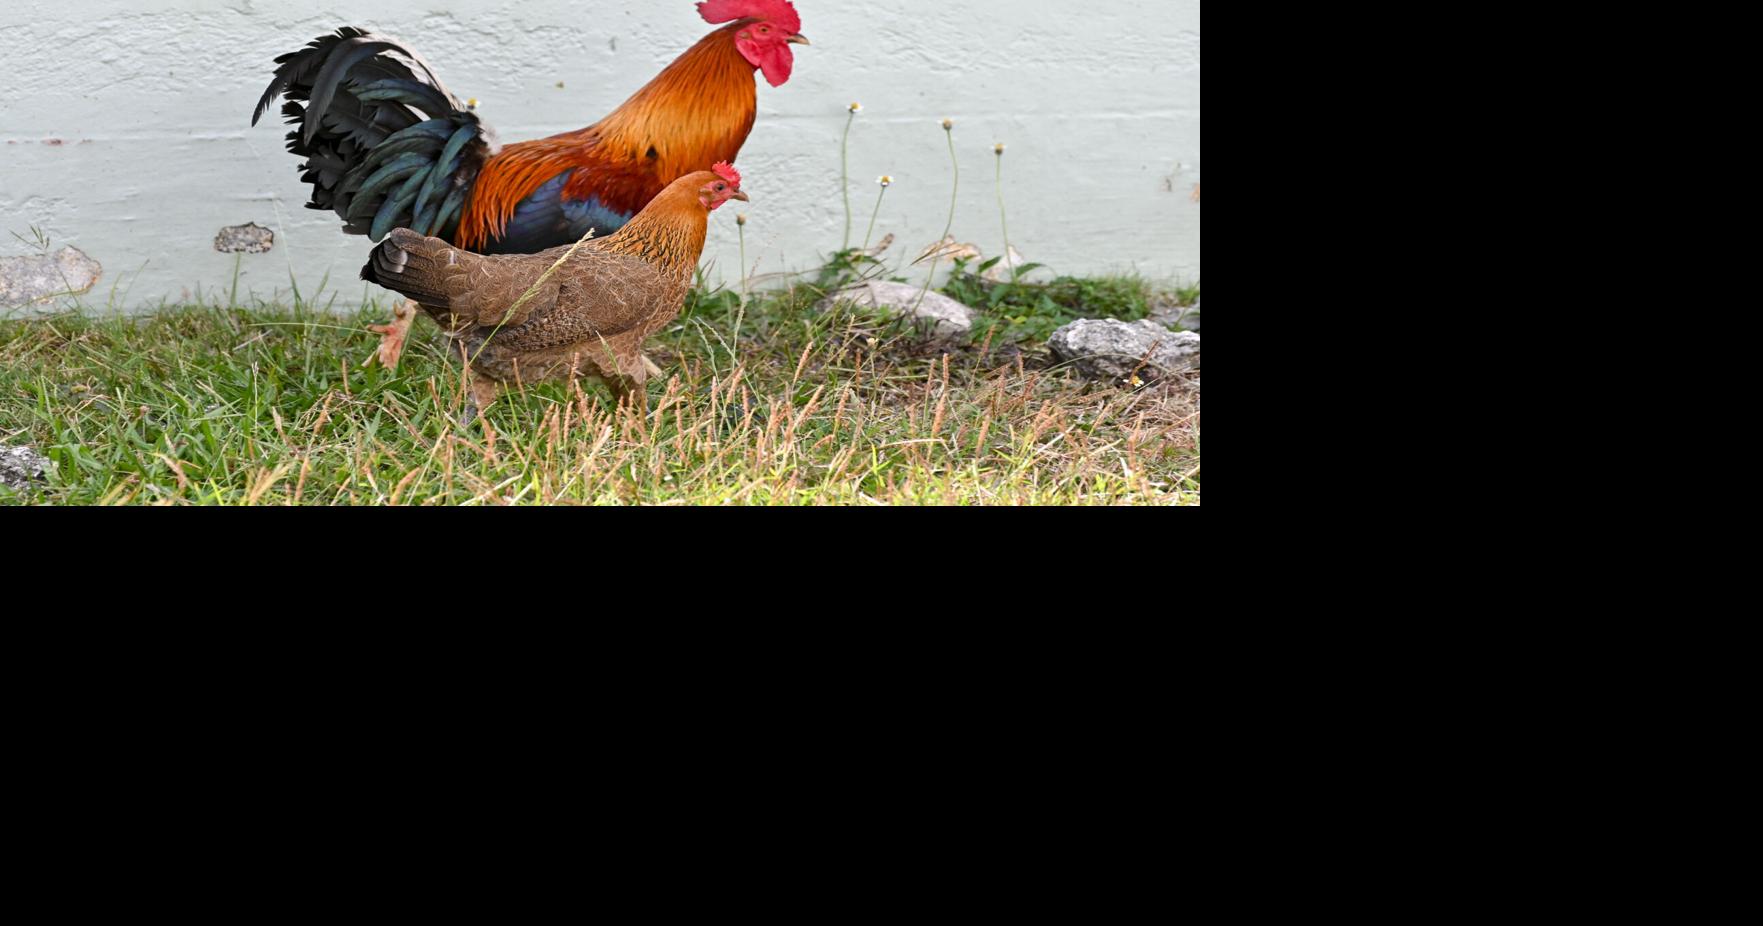 Feral chickens a nuisance for some mayors | Guam News | postguam.com